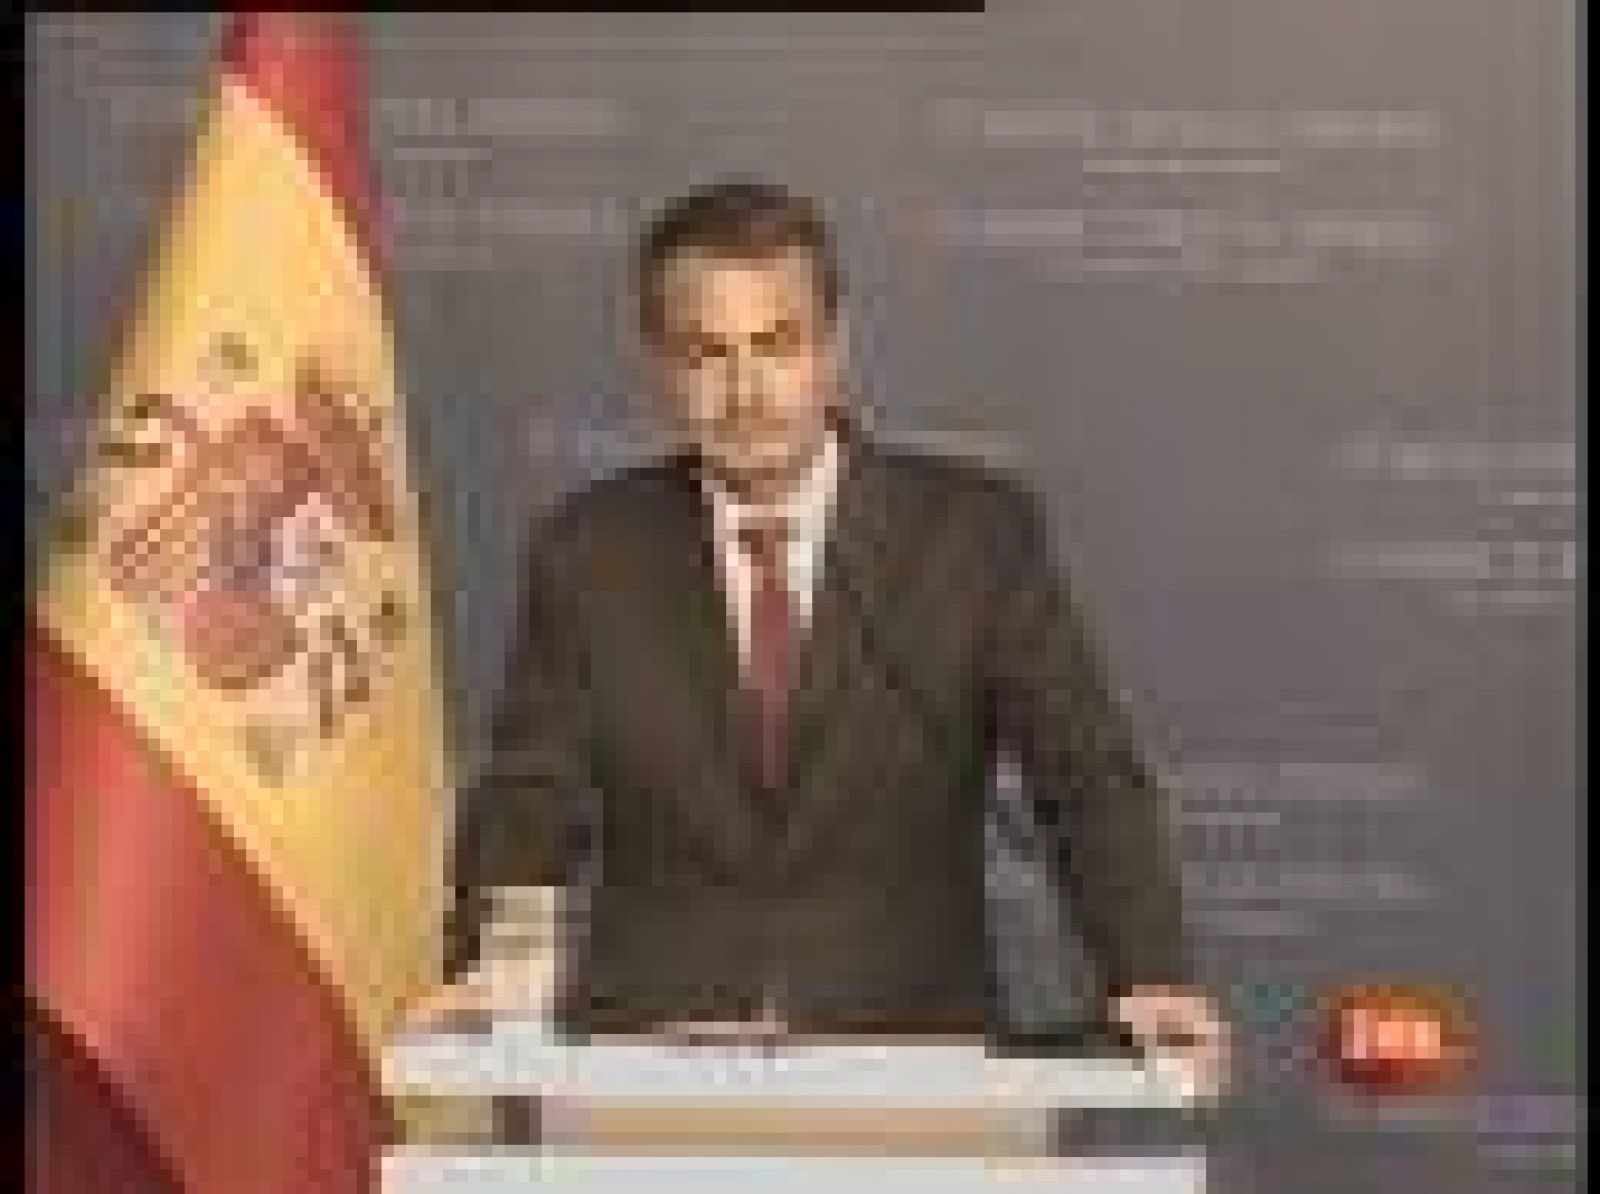 José Luis Rodríguez Zapatero ha sido preguntado en Turquía por la posible remodelación de su Gobierno y ha respondido que no hablará de ese asunto "fuera de España". El presidente ha adelantado su regreso para estar este martes en Madrid (07/04/09).